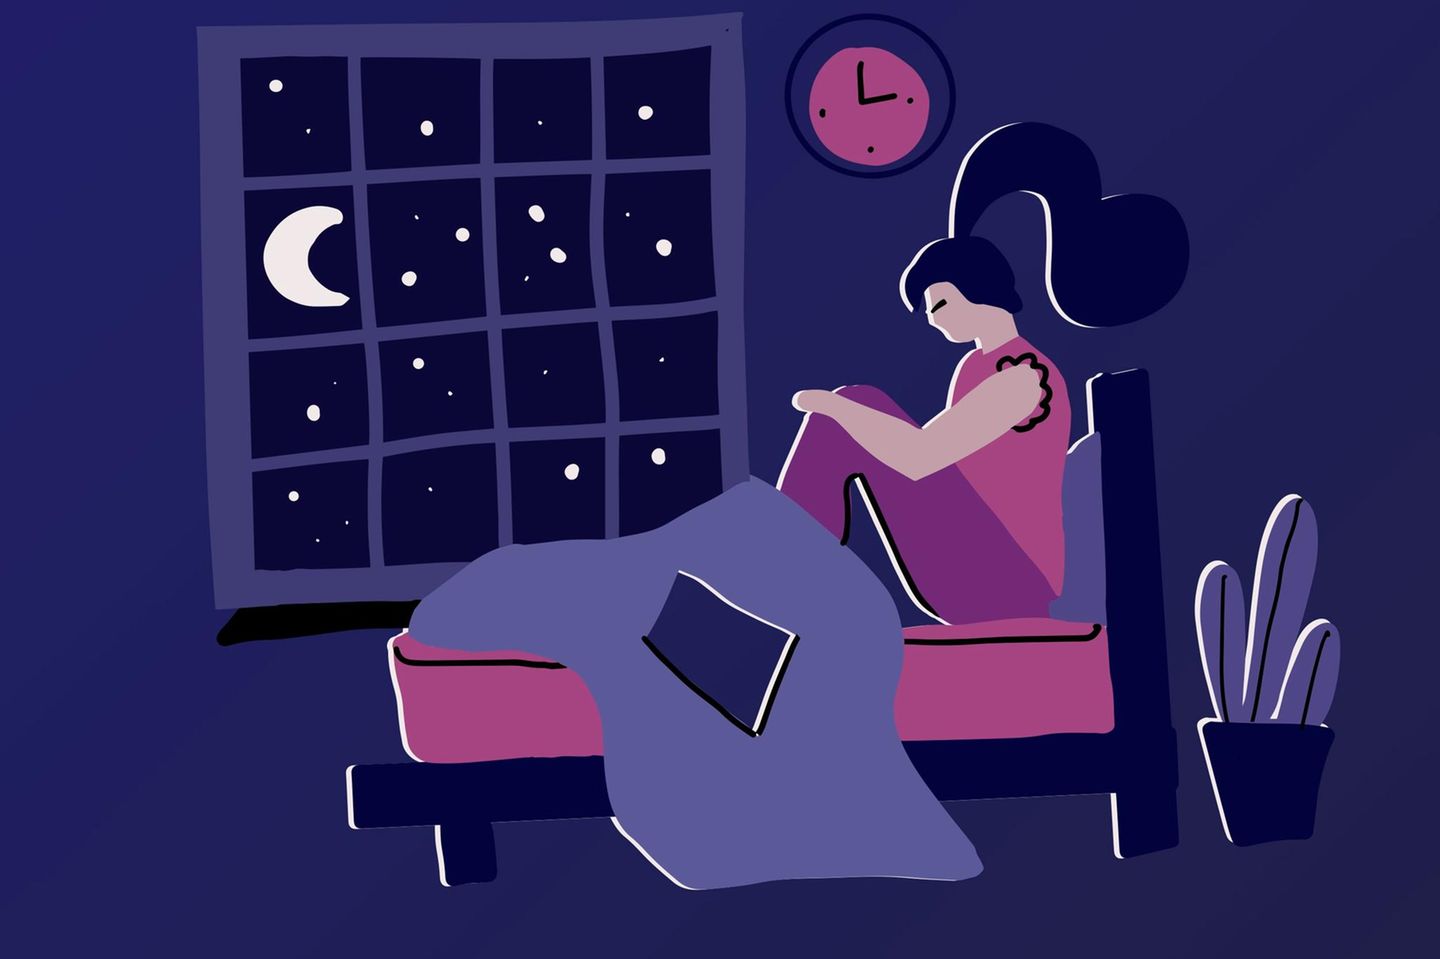 Horoskop: Eine Frau sitzt auf ihrem Bett und leidet unter dem Mond (Illustration)